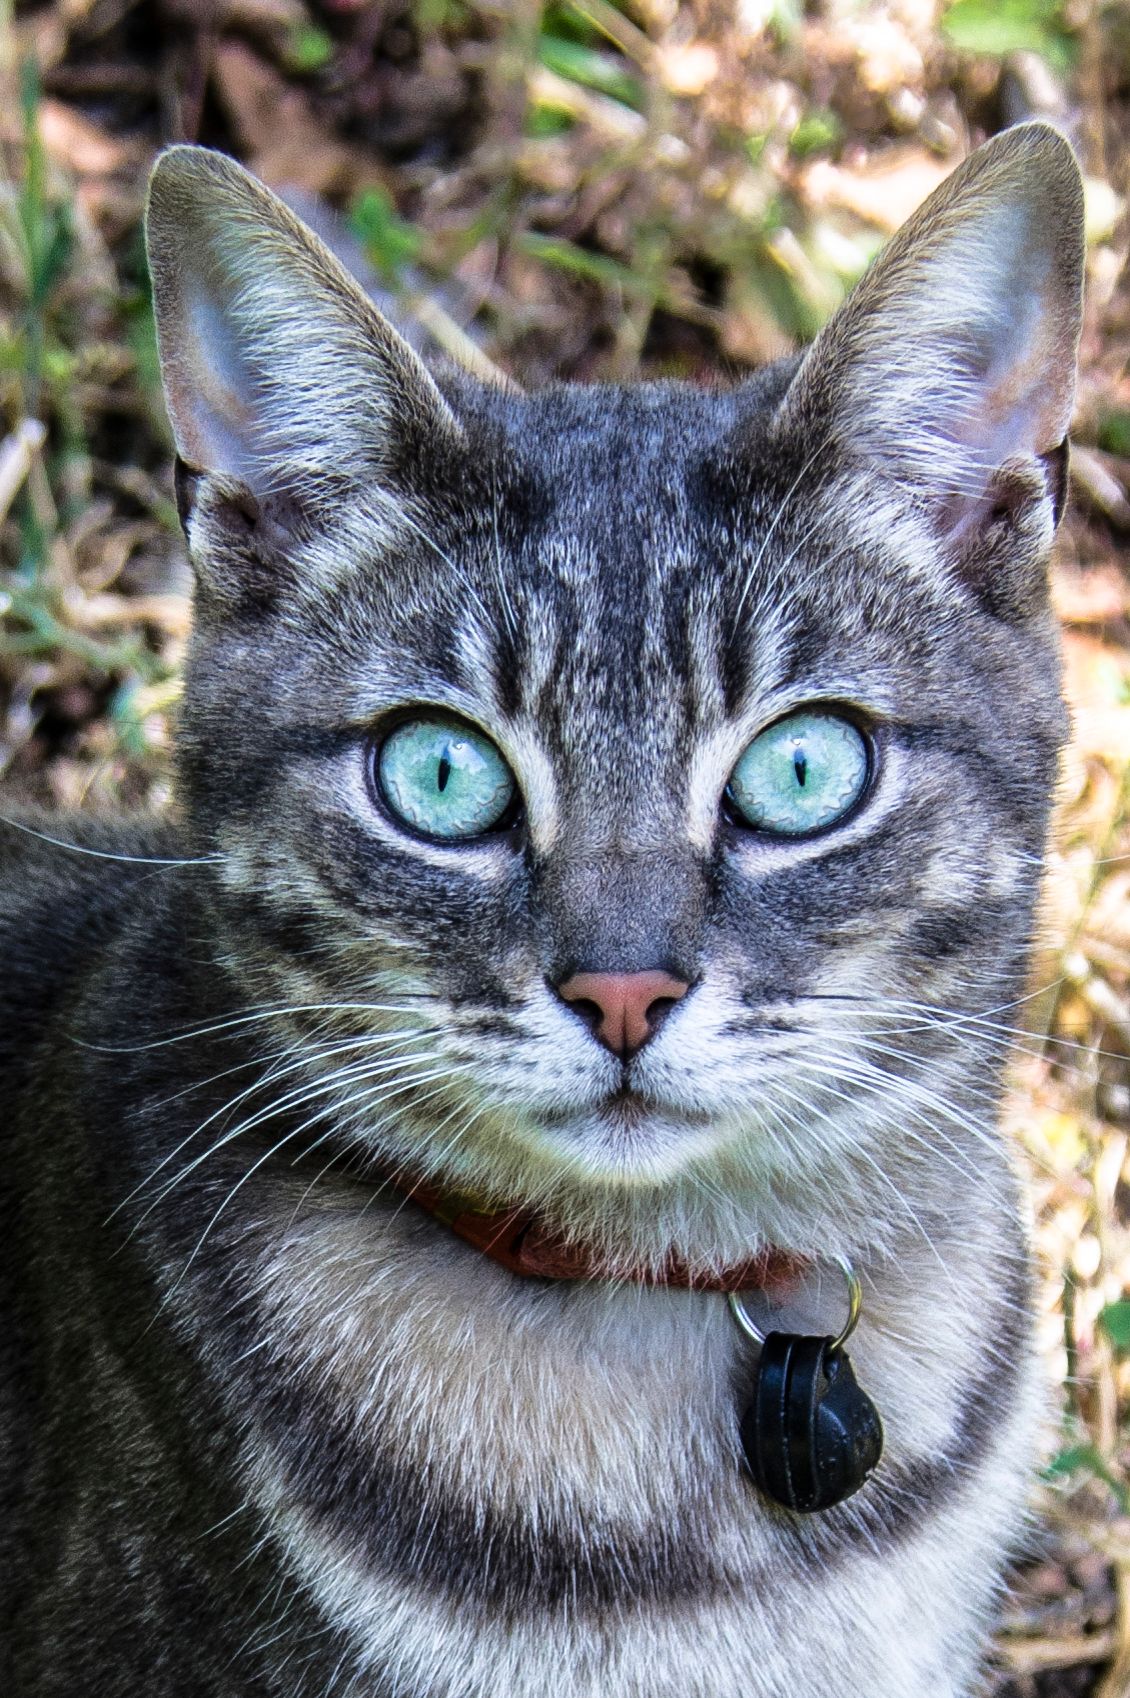 Cat eyes, Santa Cruz, CA